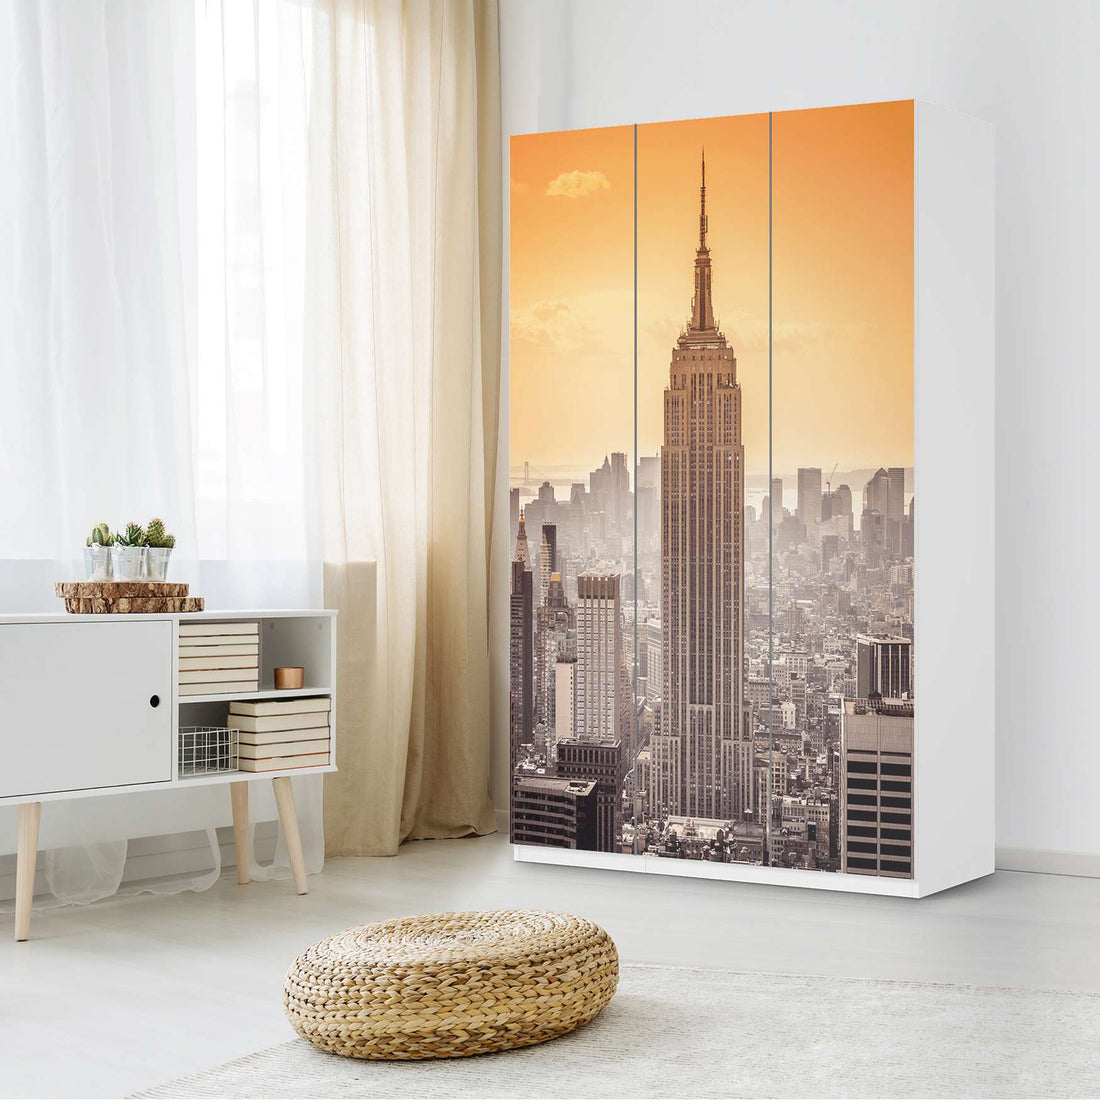 Selbstklebende Folie Empire State Building - IKEA Pax Schrank 236 cm Höhe - 3 Türen - Schlafzimmer